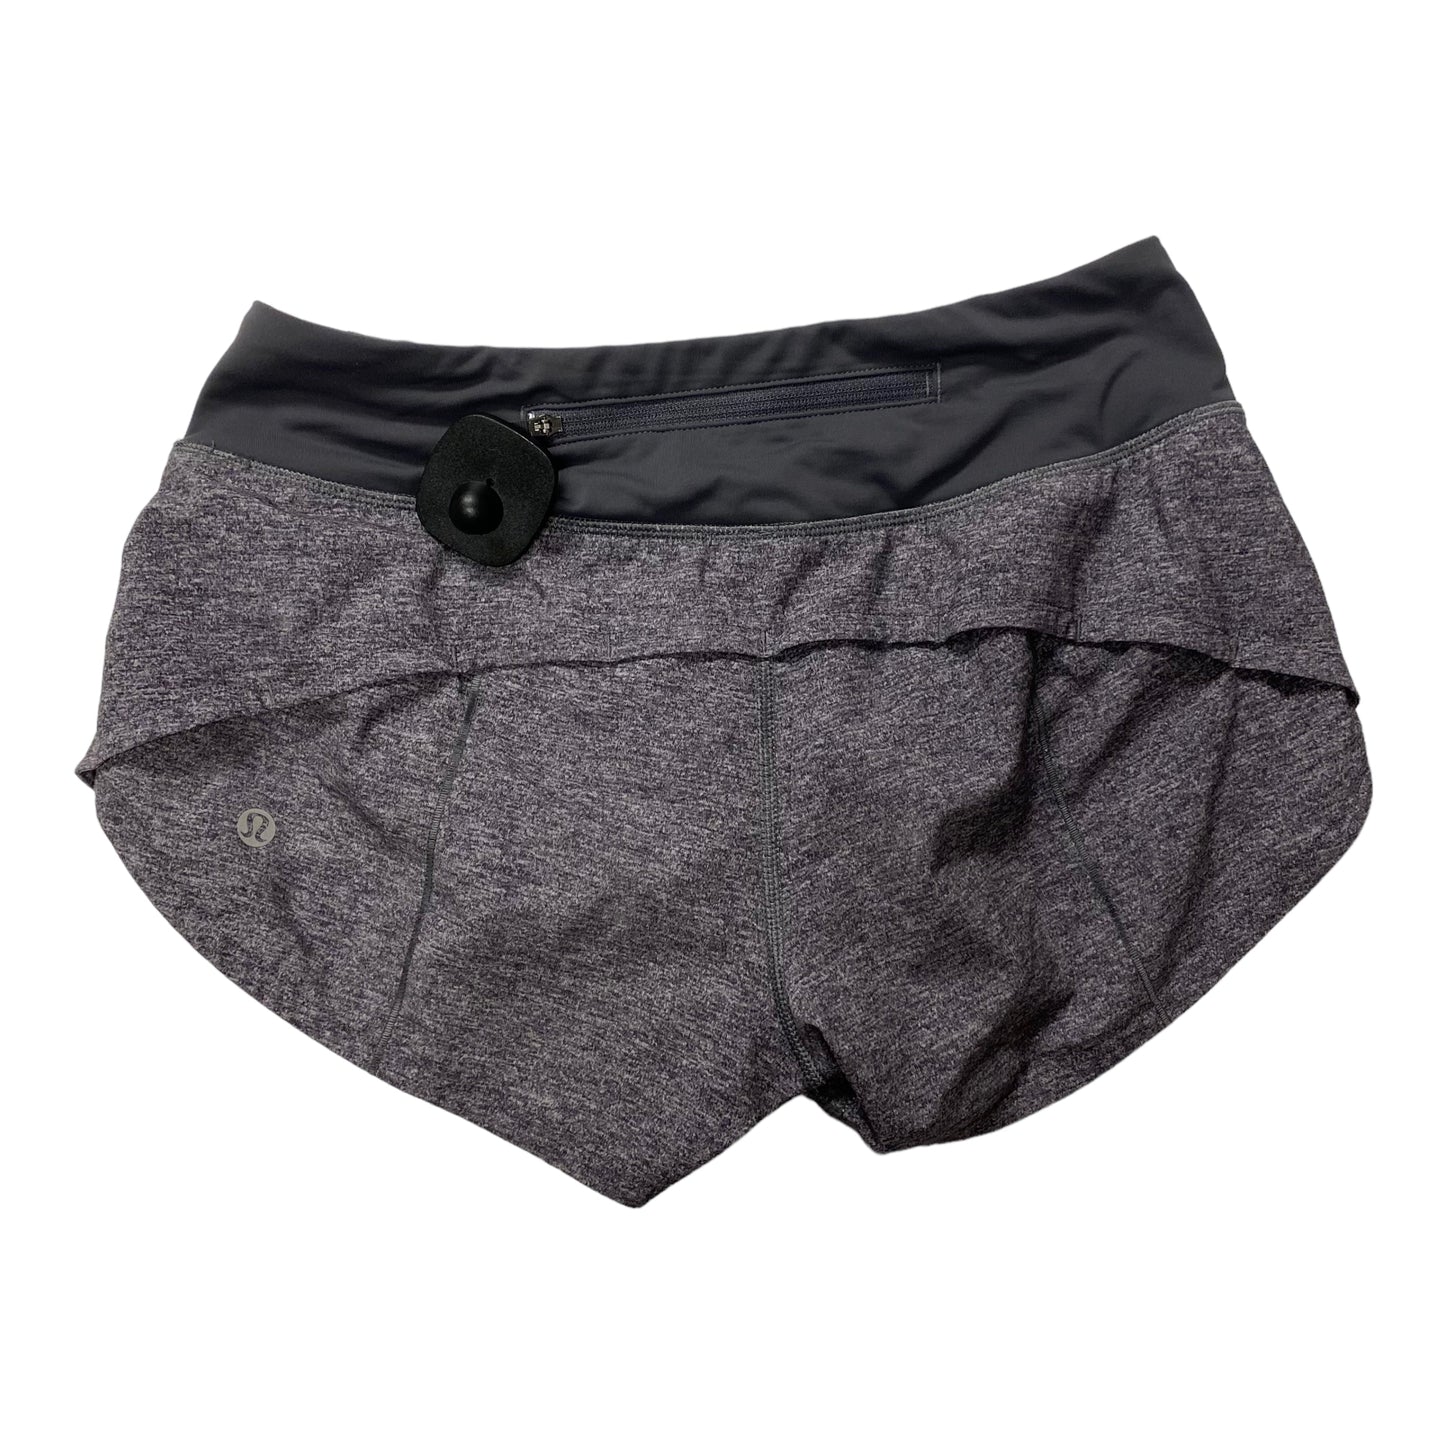 Grey Athletic Shorts Lululemon, Size 2